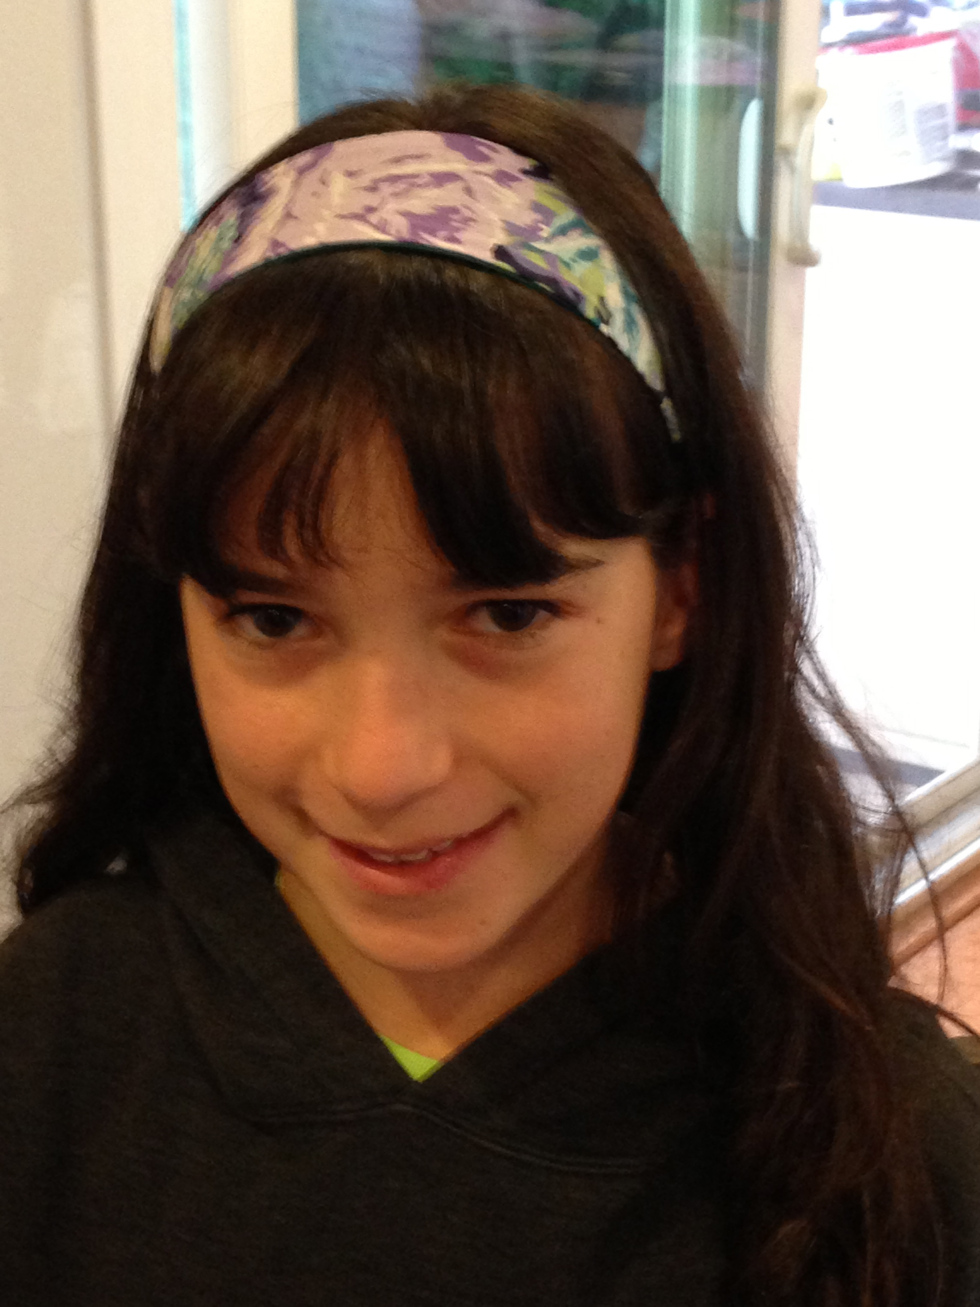  5th grade headband. 